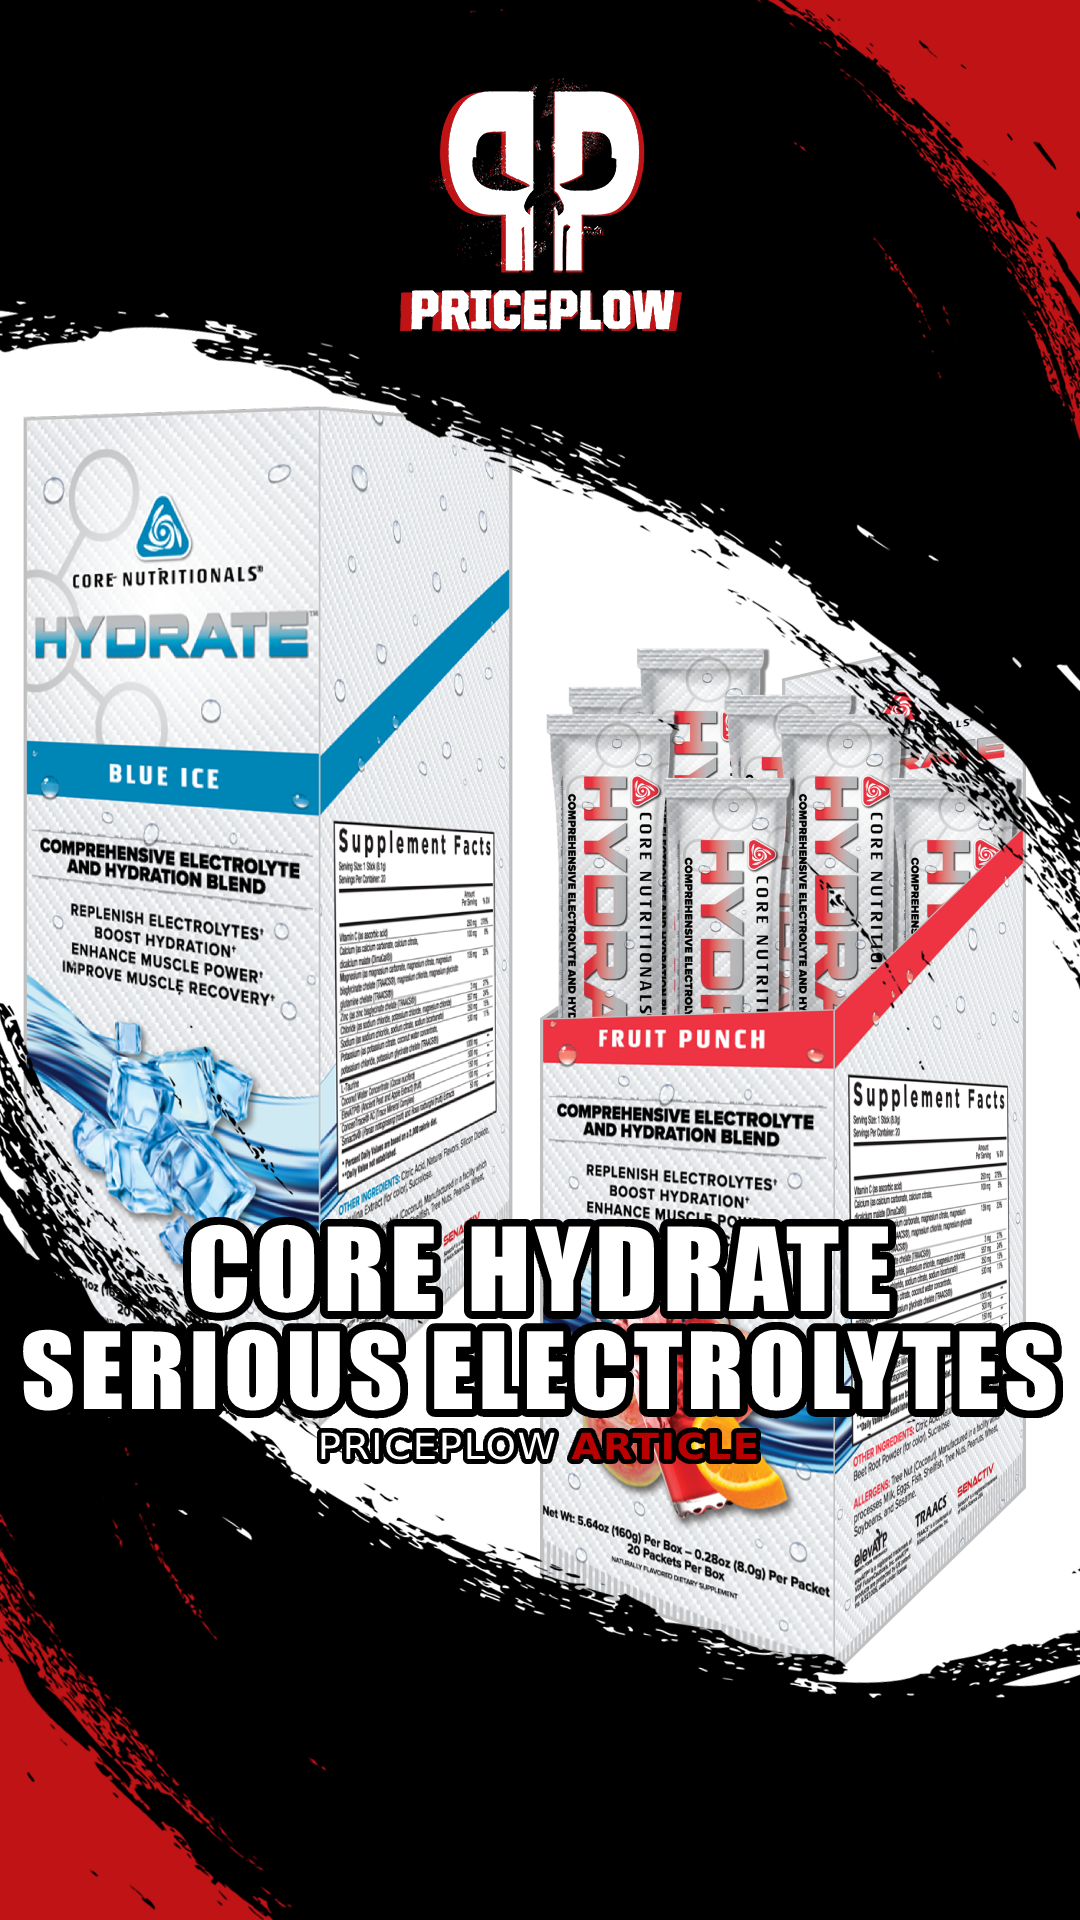 CORE Hydrate